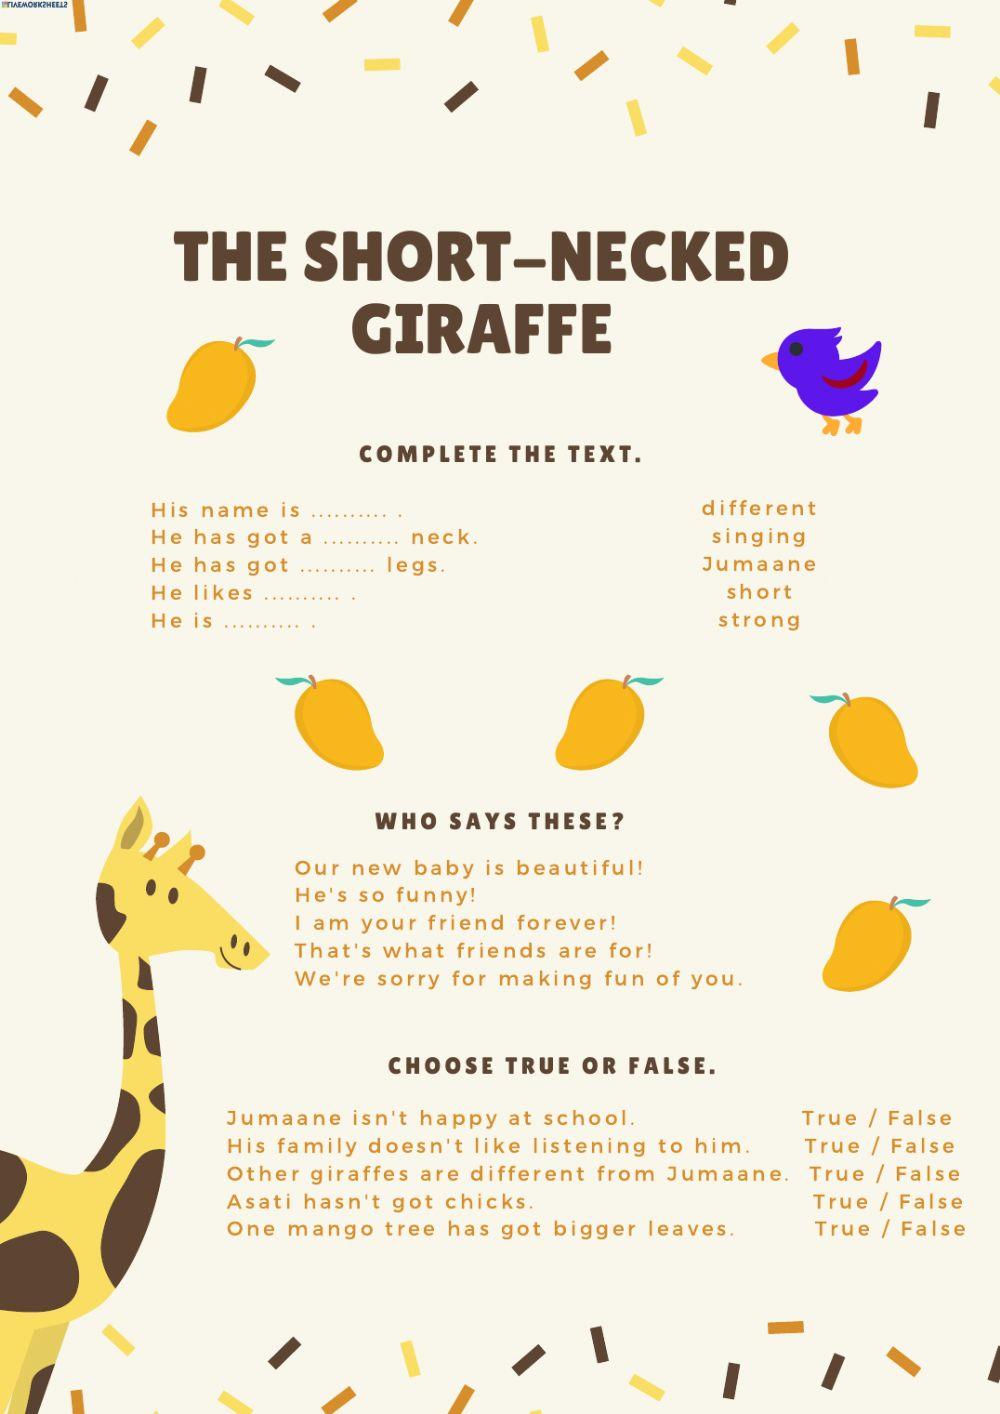 The Short-Necked Giraffe